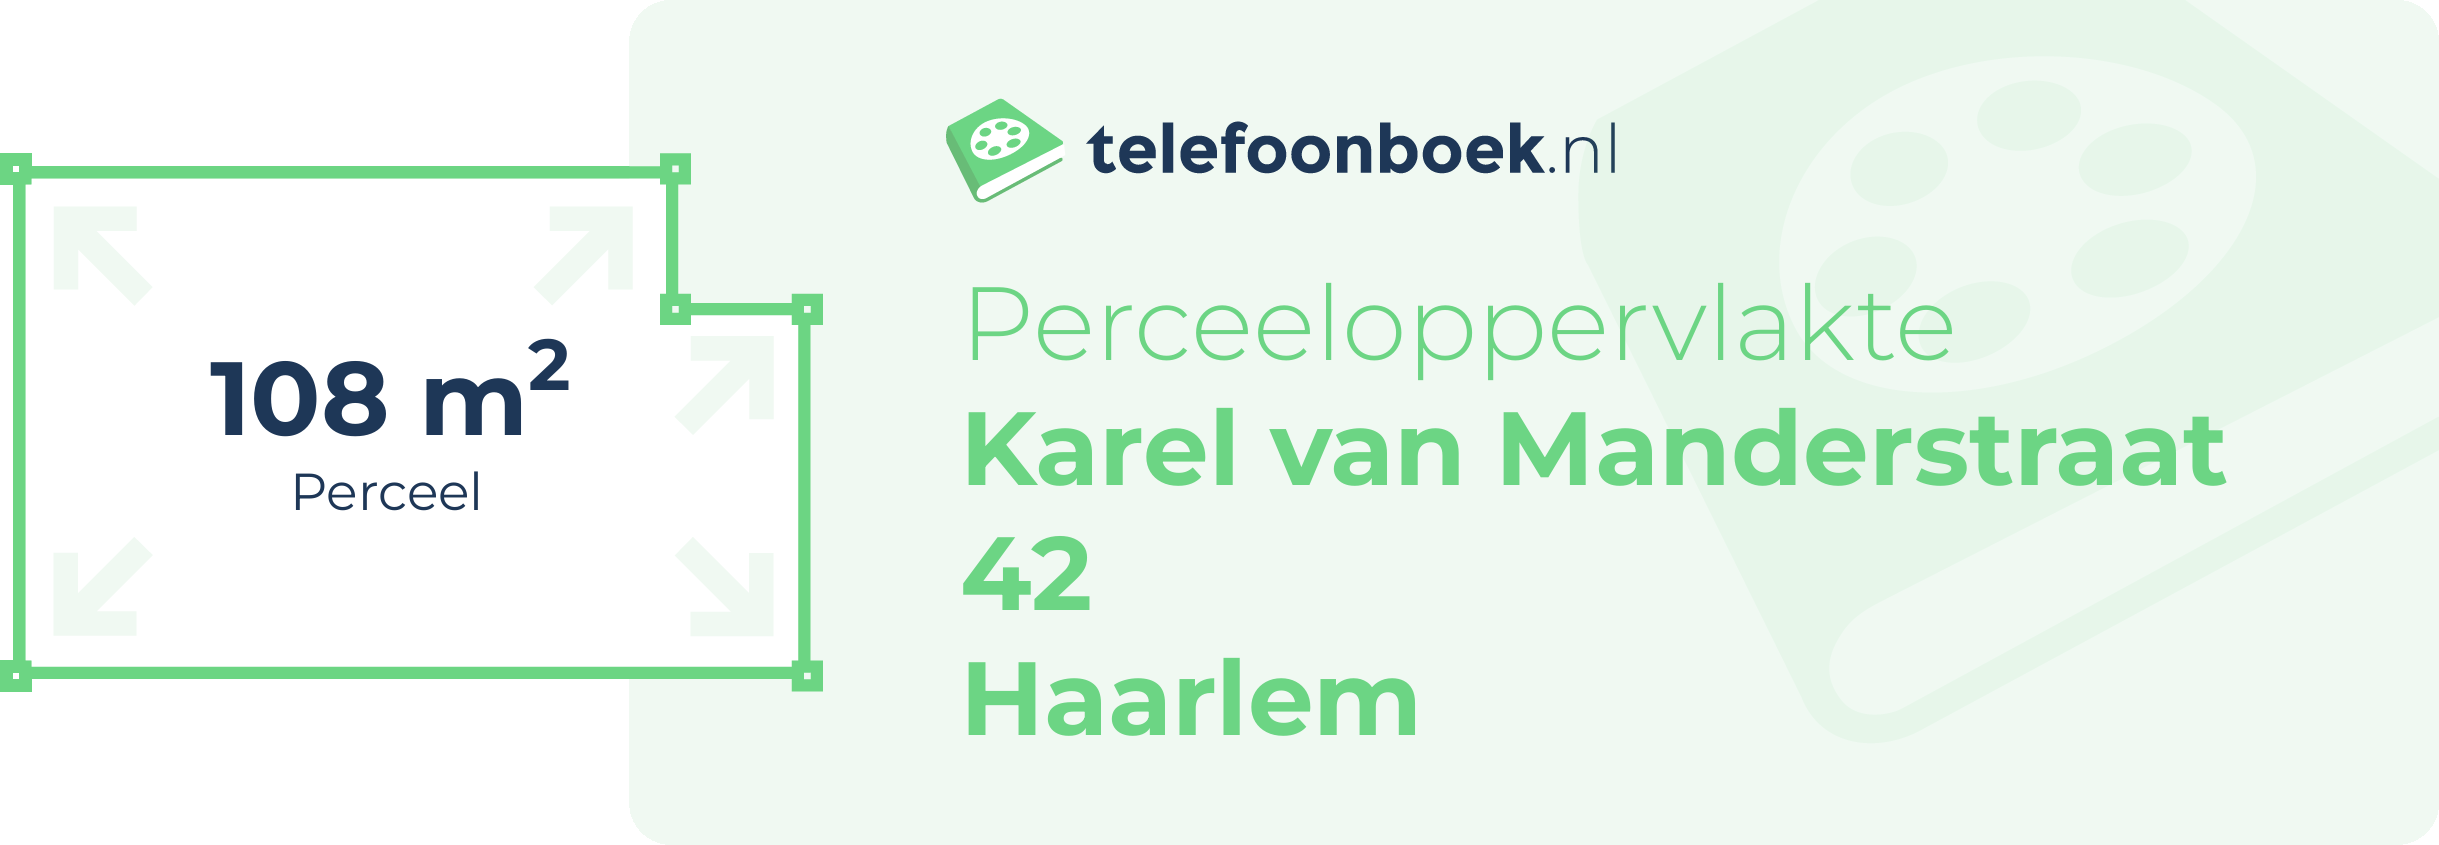 Perceeloppervlakte Karel Van Manderstraat 42 Haarlem